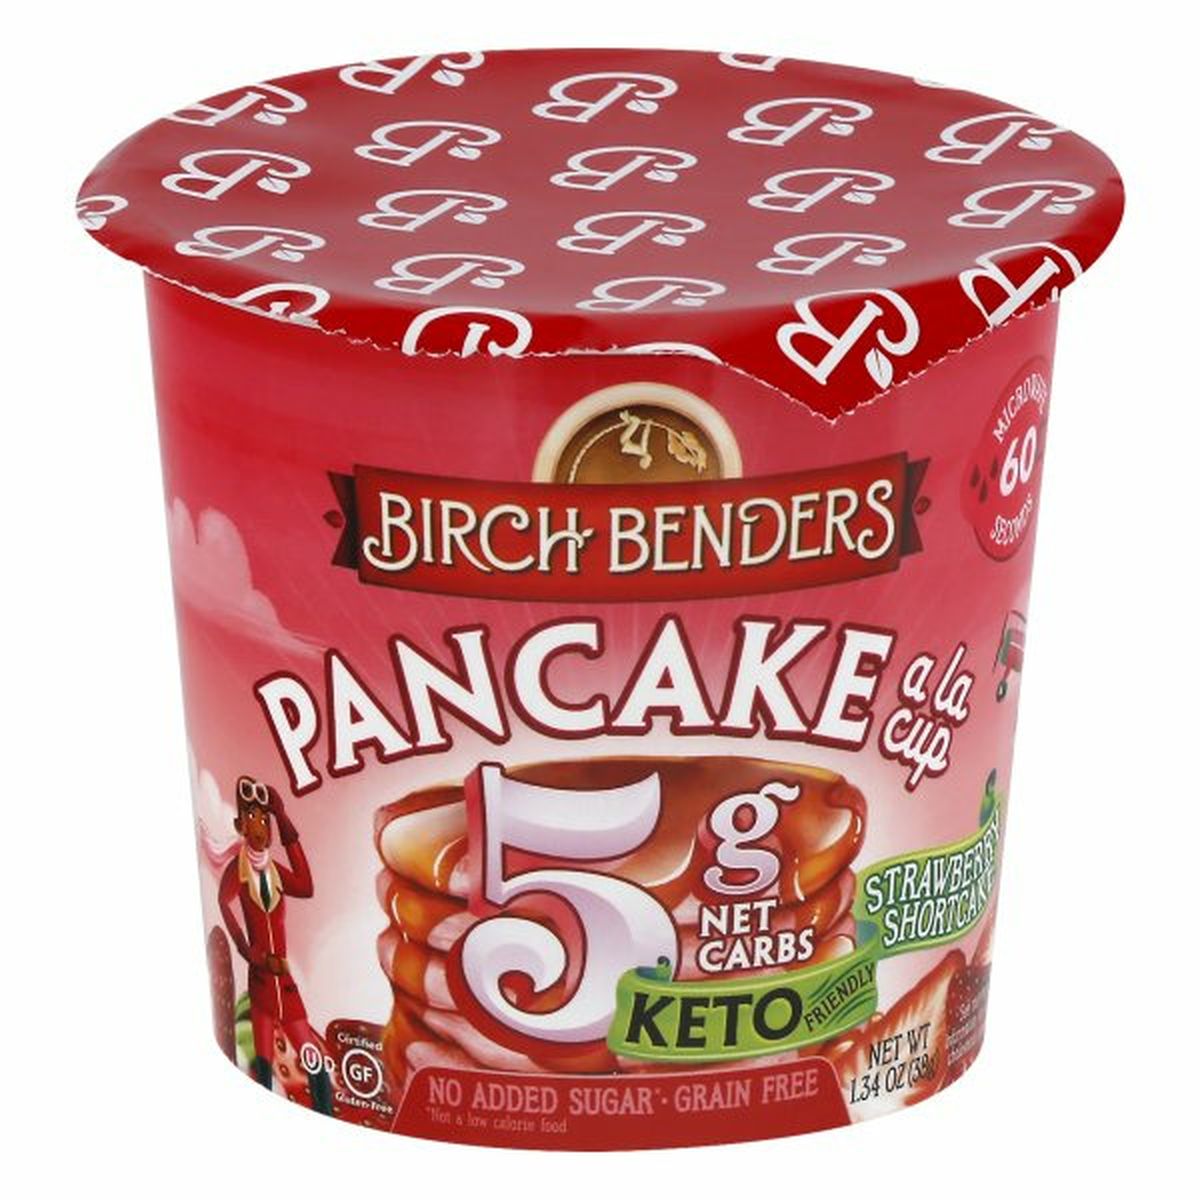 Calories in Birch Benders Pancake a La Cup, Strawberry Shortcake